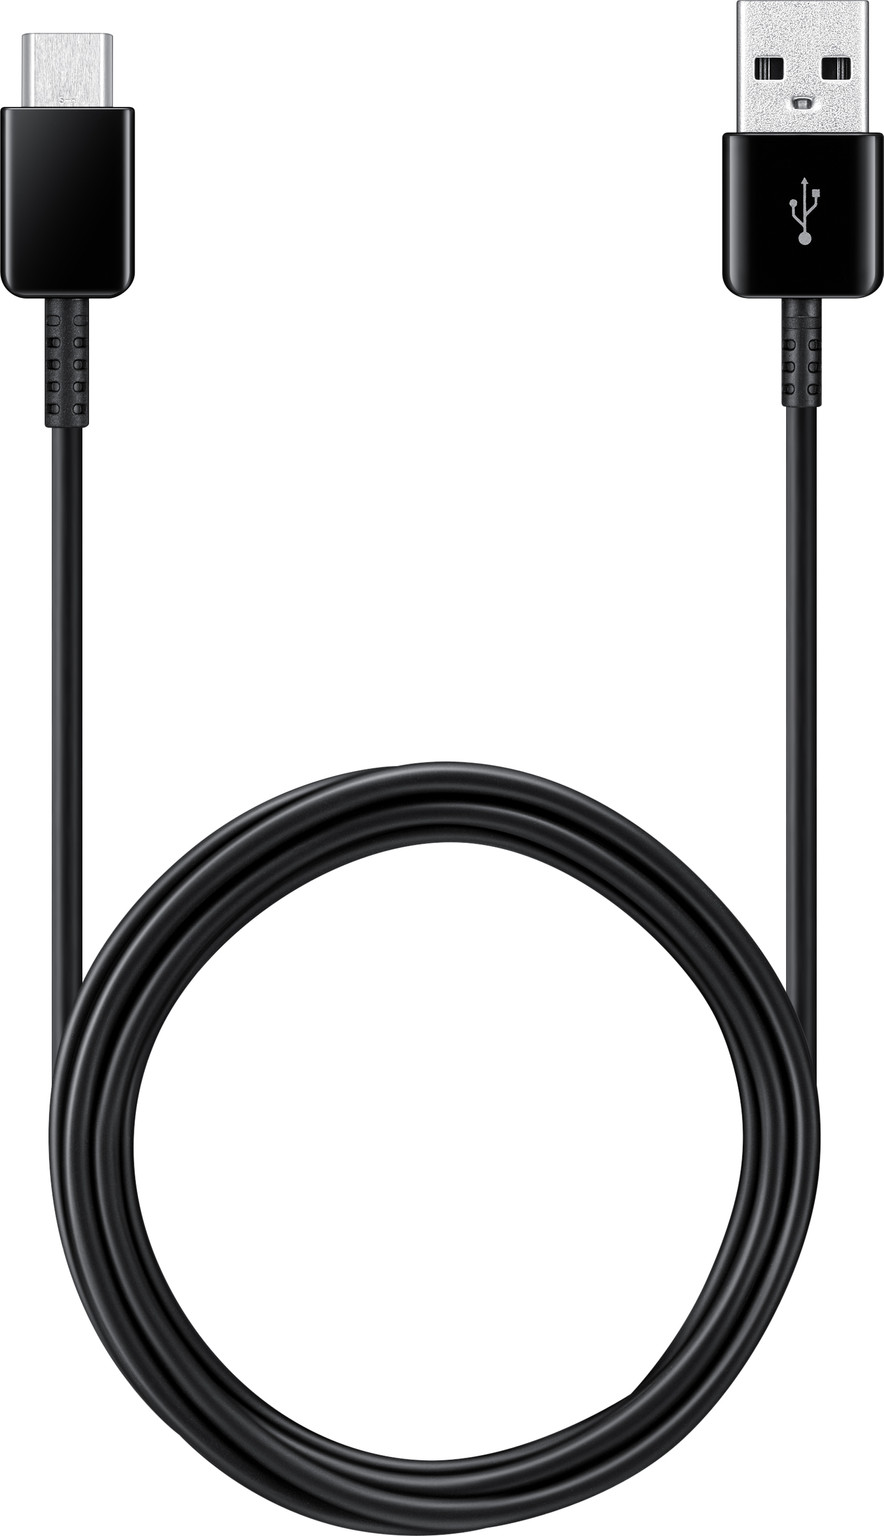 Erge, ernstige Accommodatie Betrokken Samsung Galaxy A3 (2017) Oplaadkabel USB C 2 meter zwart - Gsm-Oplader.nl